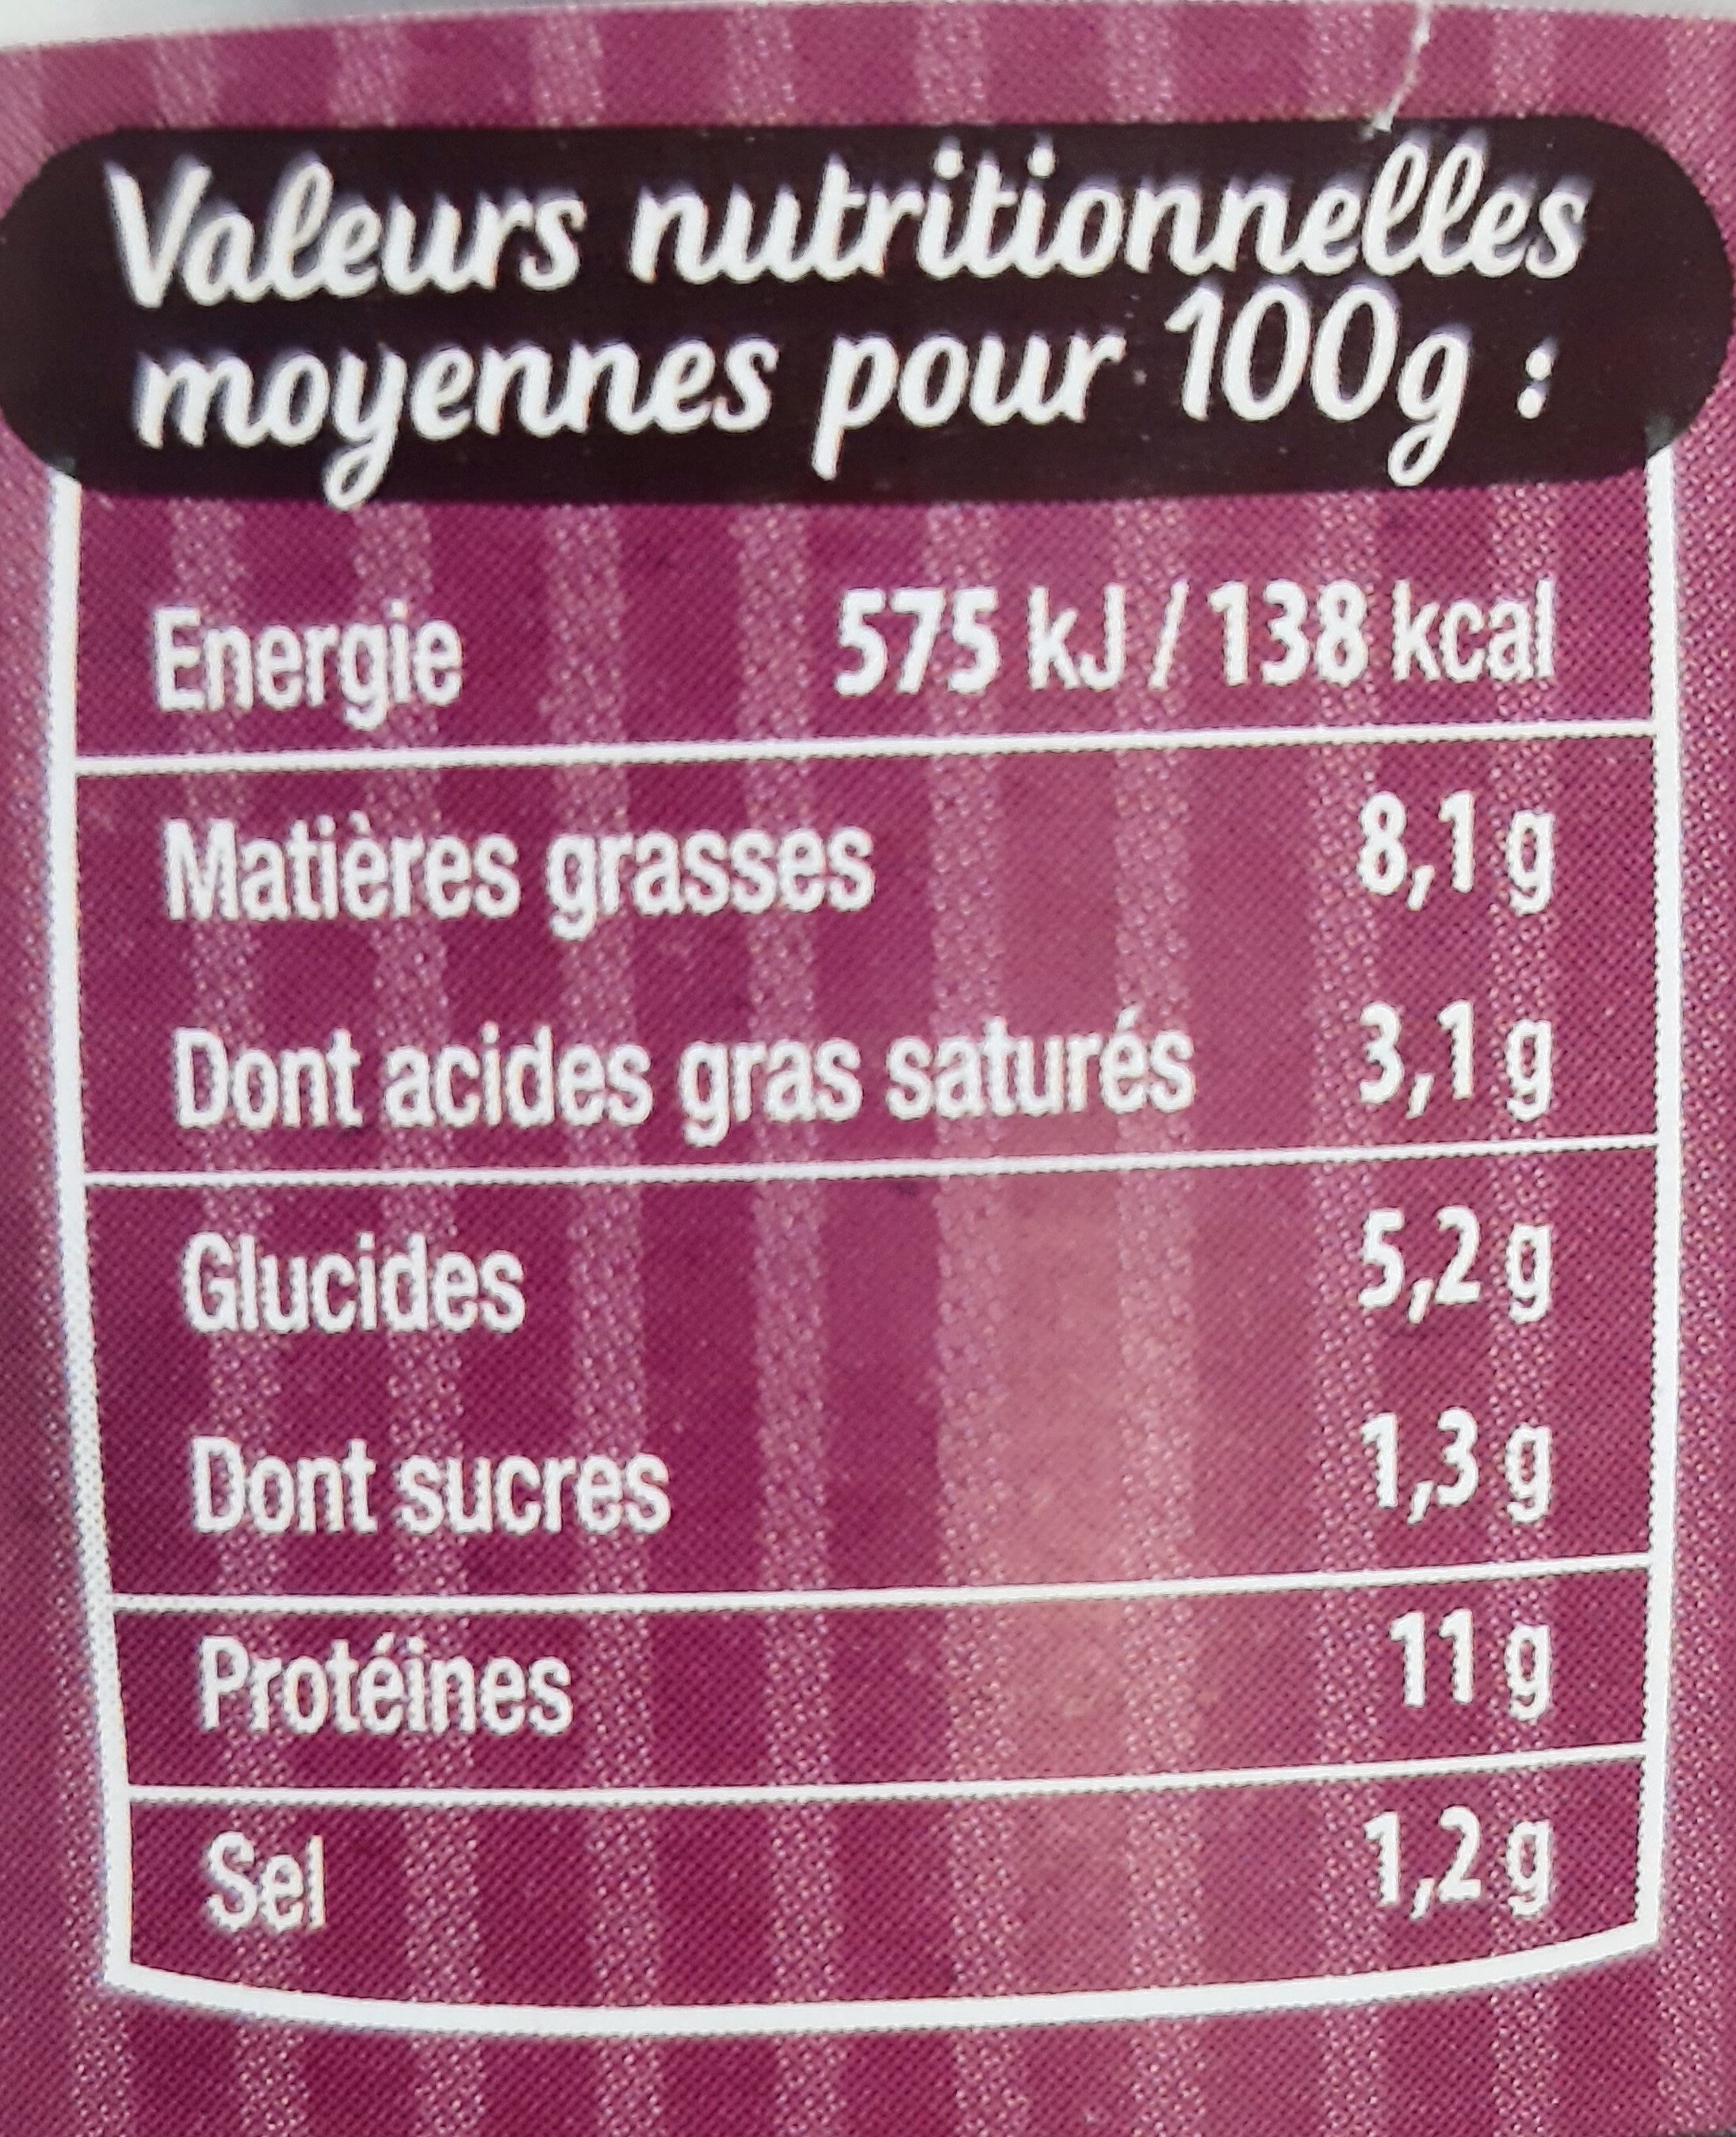 Langue de boeuf sauce au vin de Bourgogne - Nutrition facts - fr